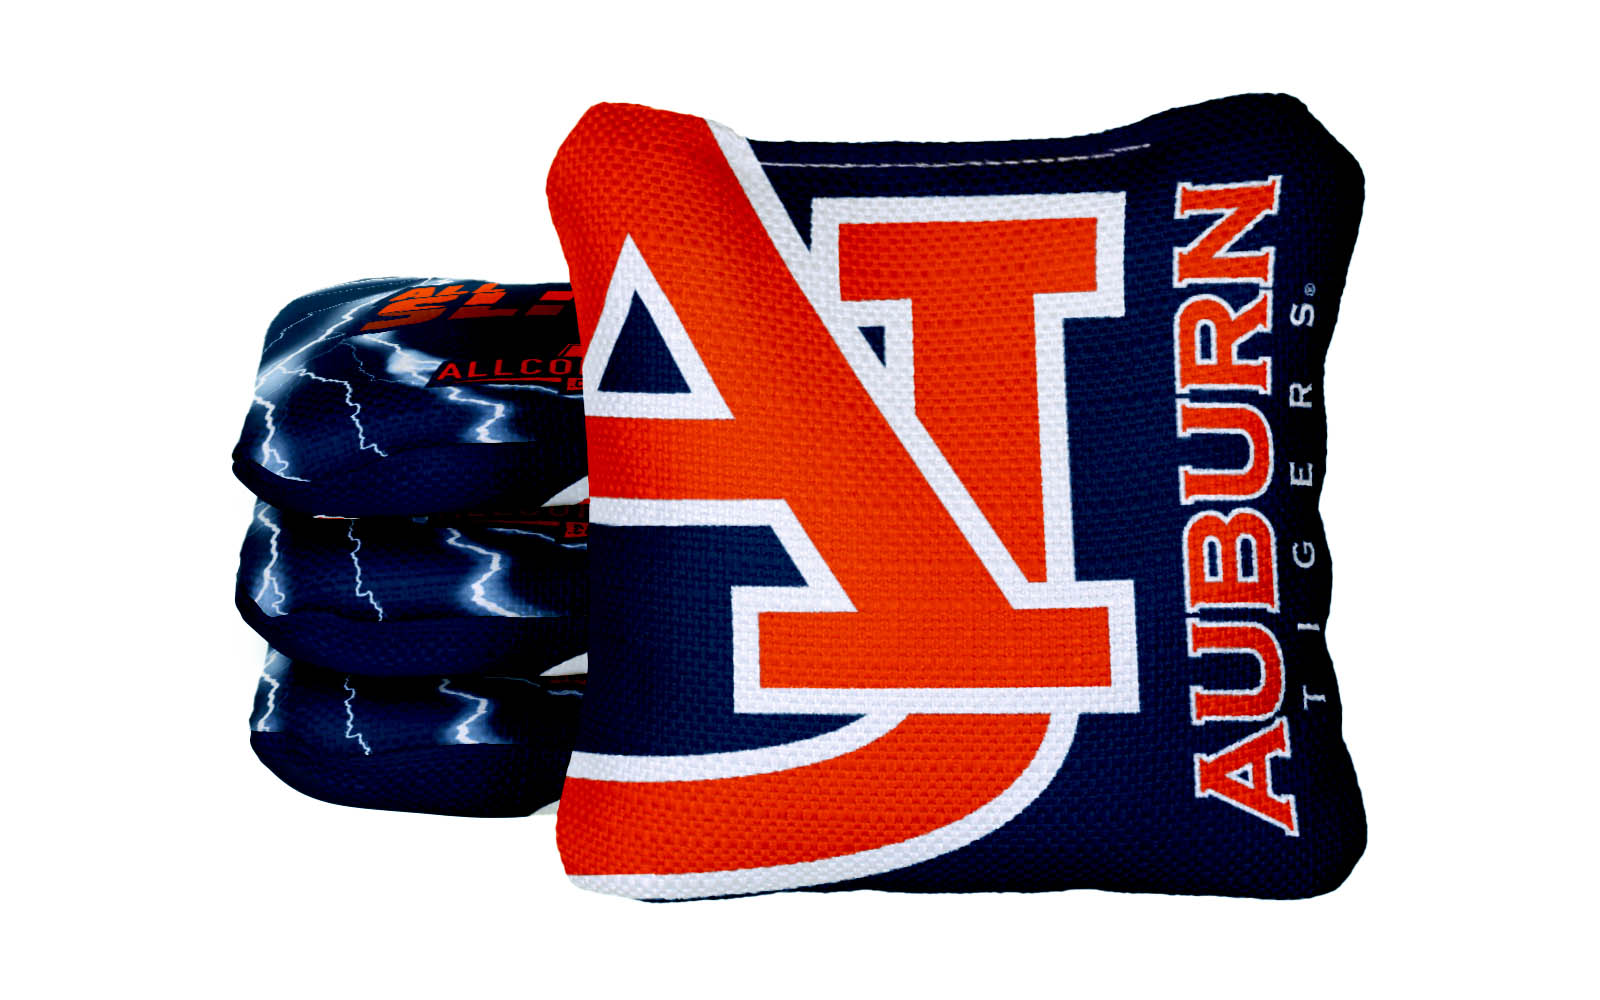 Officially Licensed Collegiate Cornhole Bags - All-Slide 2.0 - Set of 4 - Auburn University